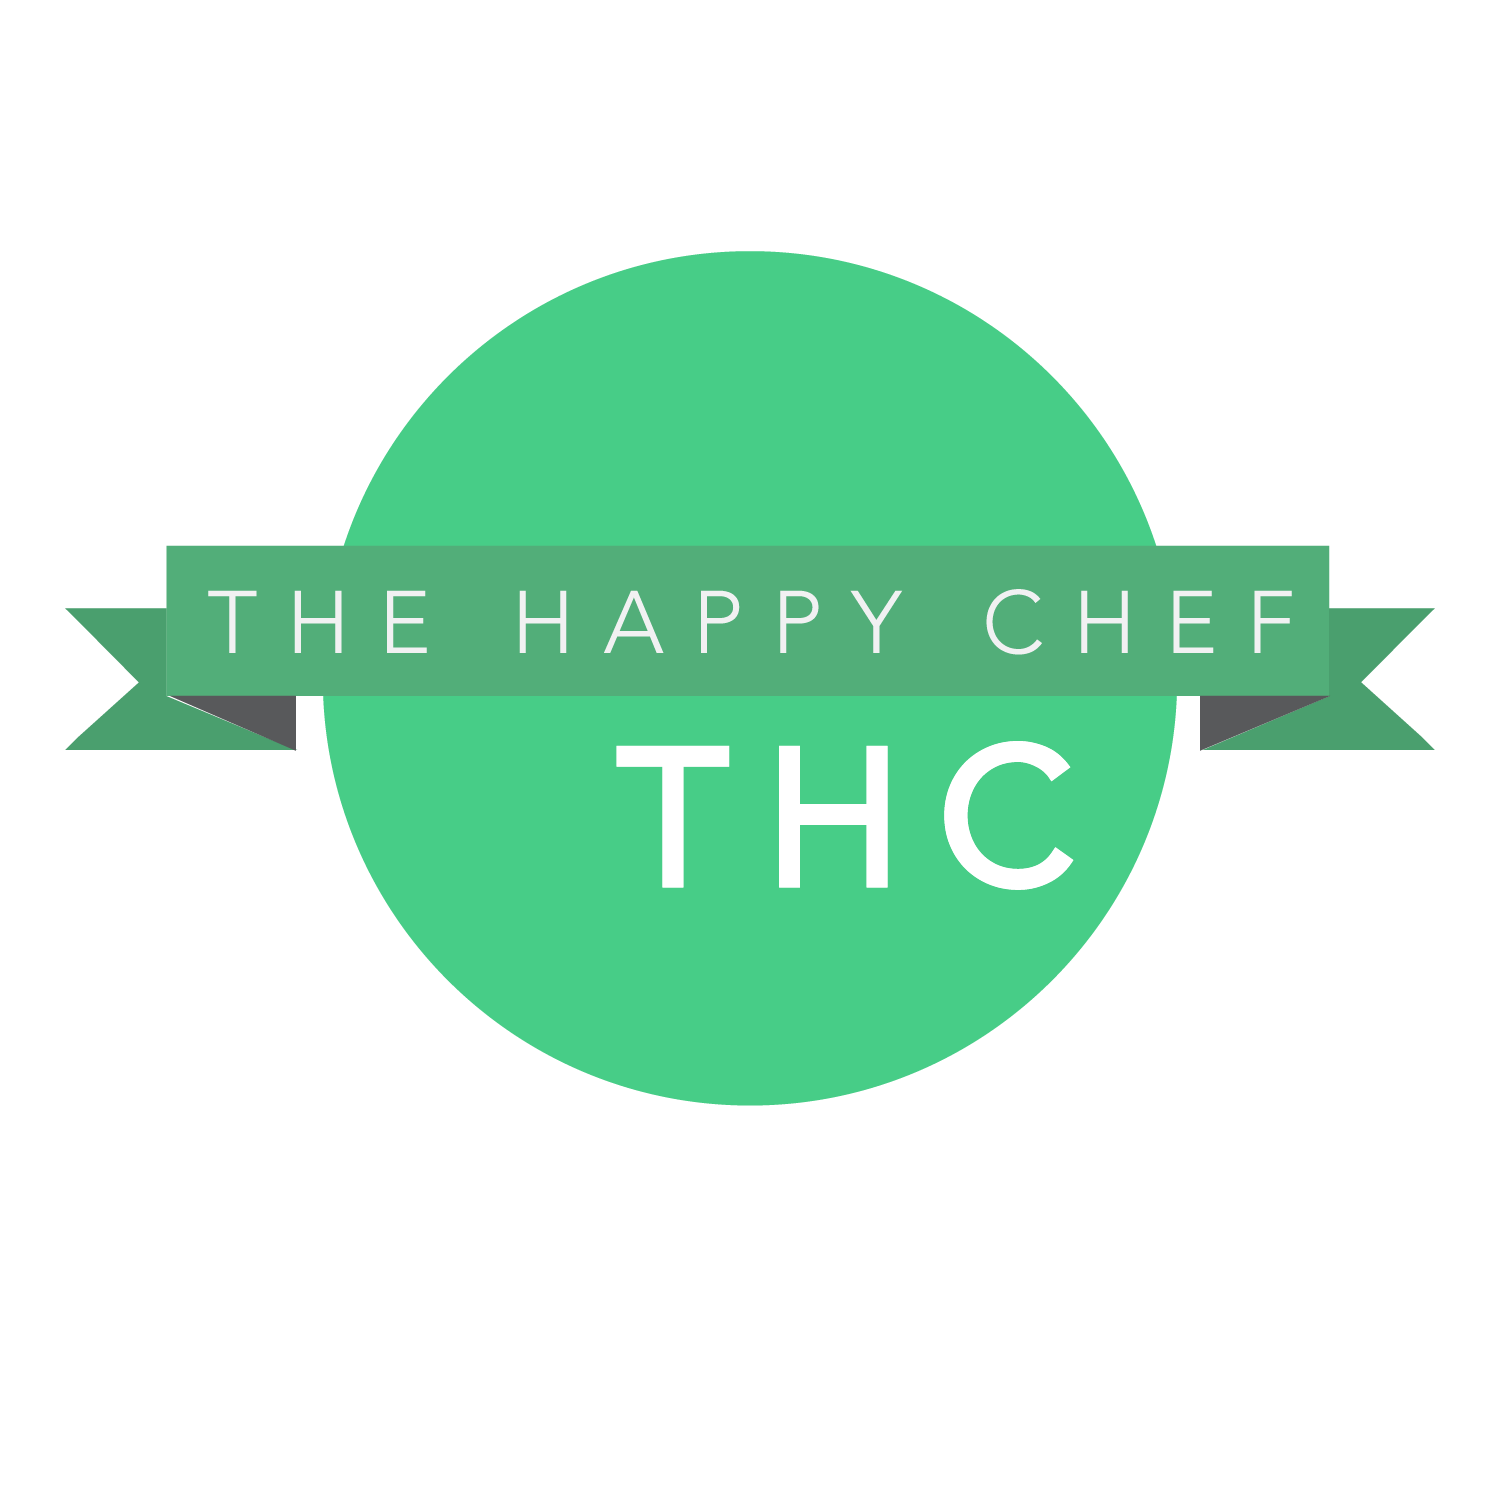 The happy chef thc